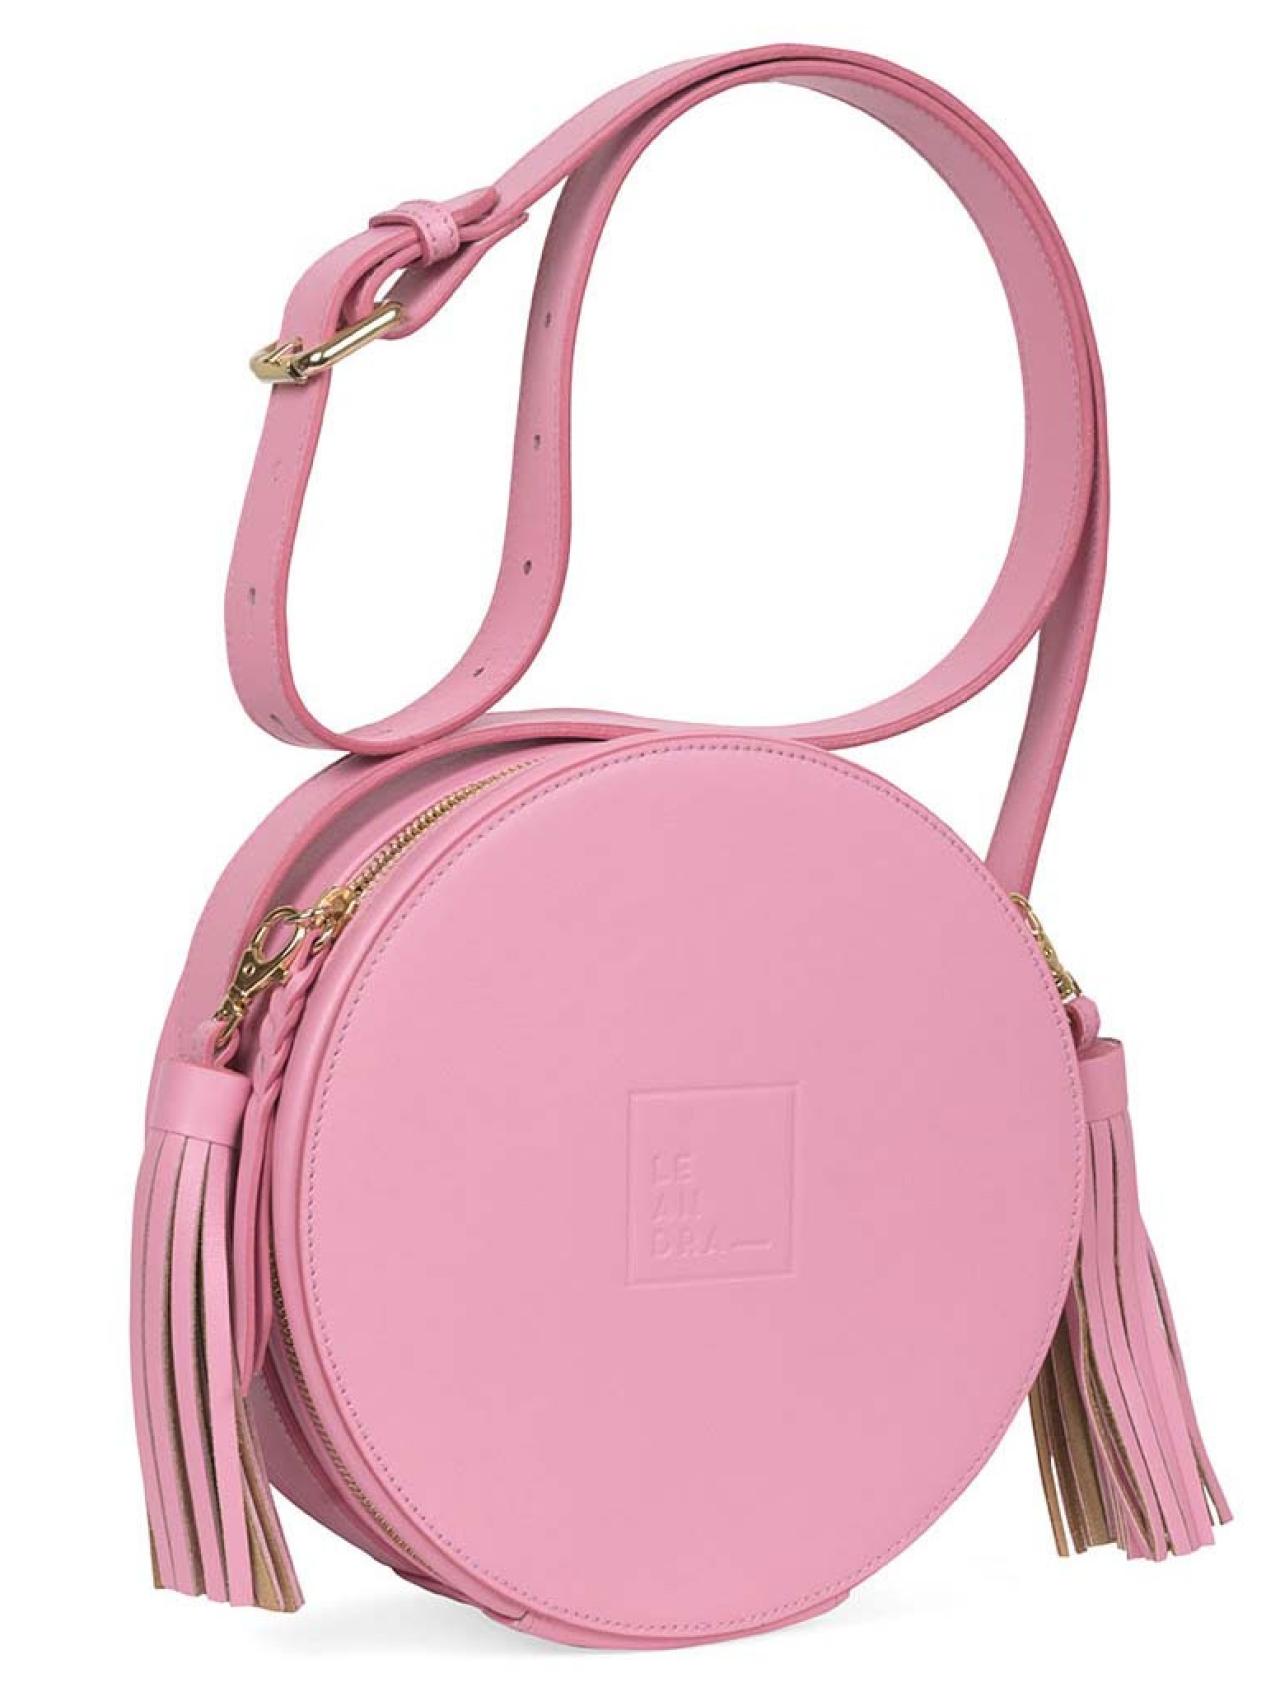 Esta es la nueva moda en el mundo los bolsos: el color rosa como apuesta segura